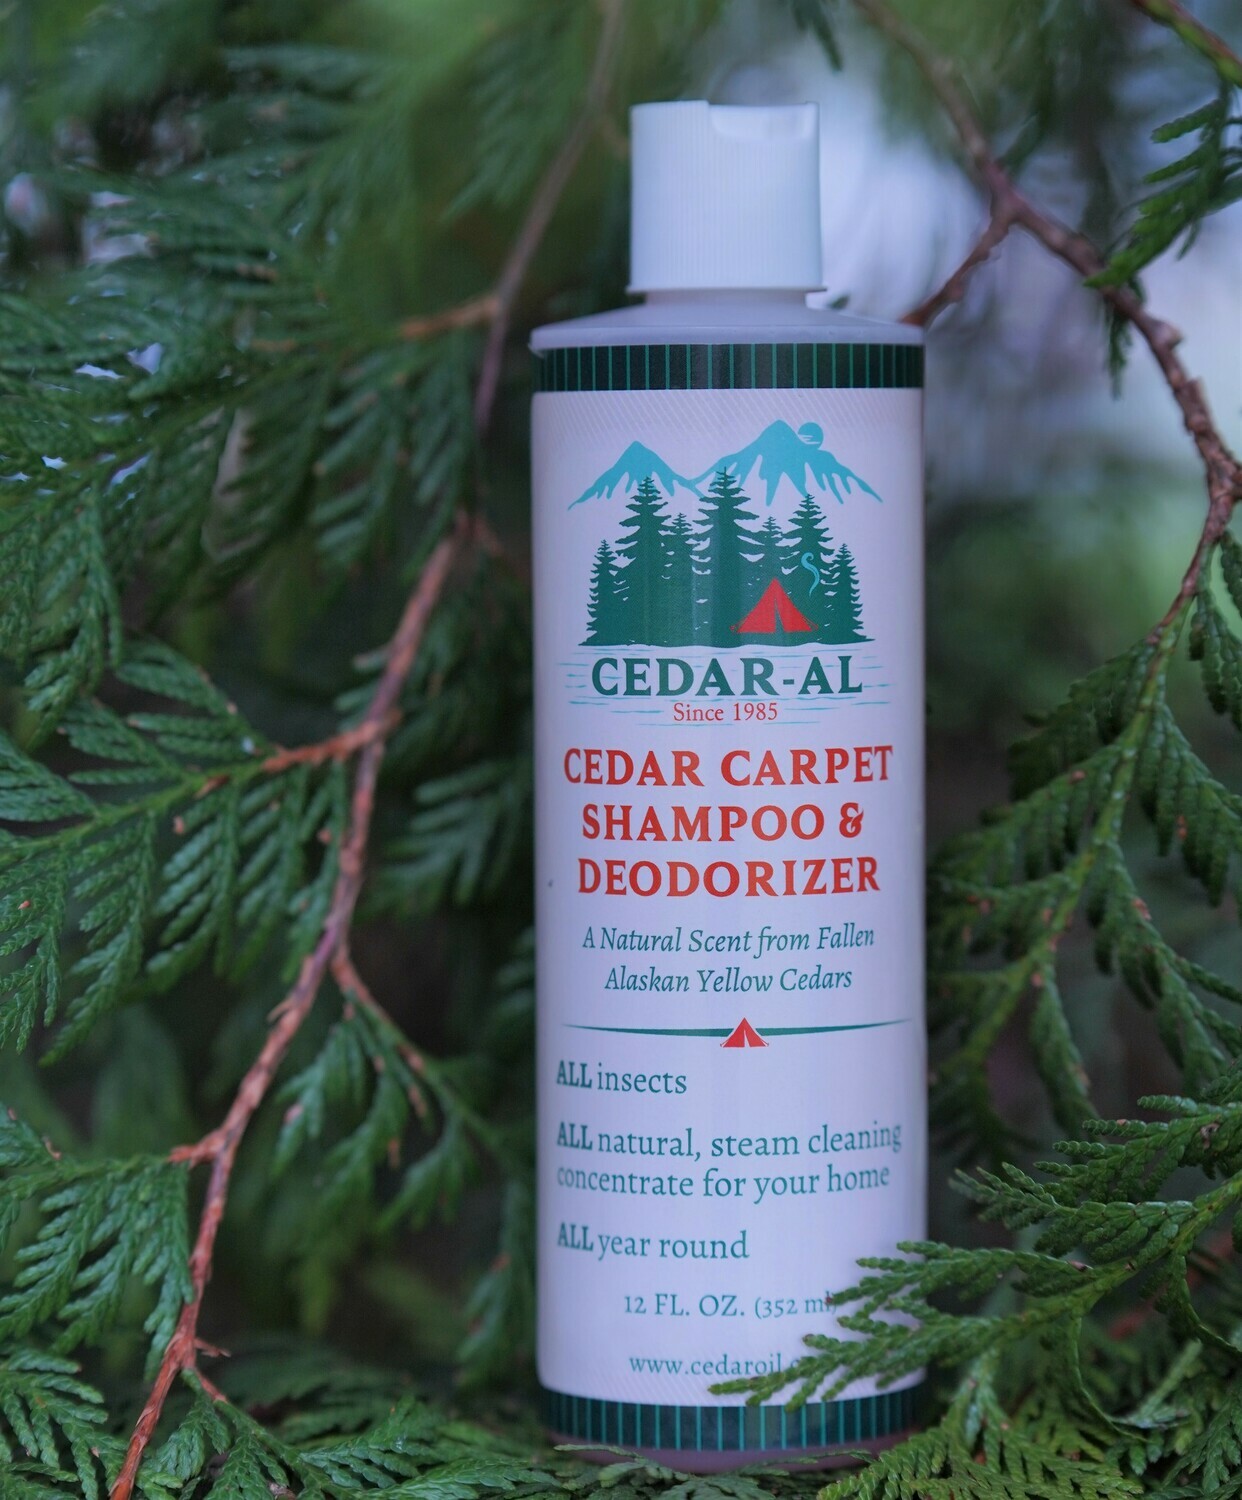 CEDAR-AL Cedar Carpet Shampoo